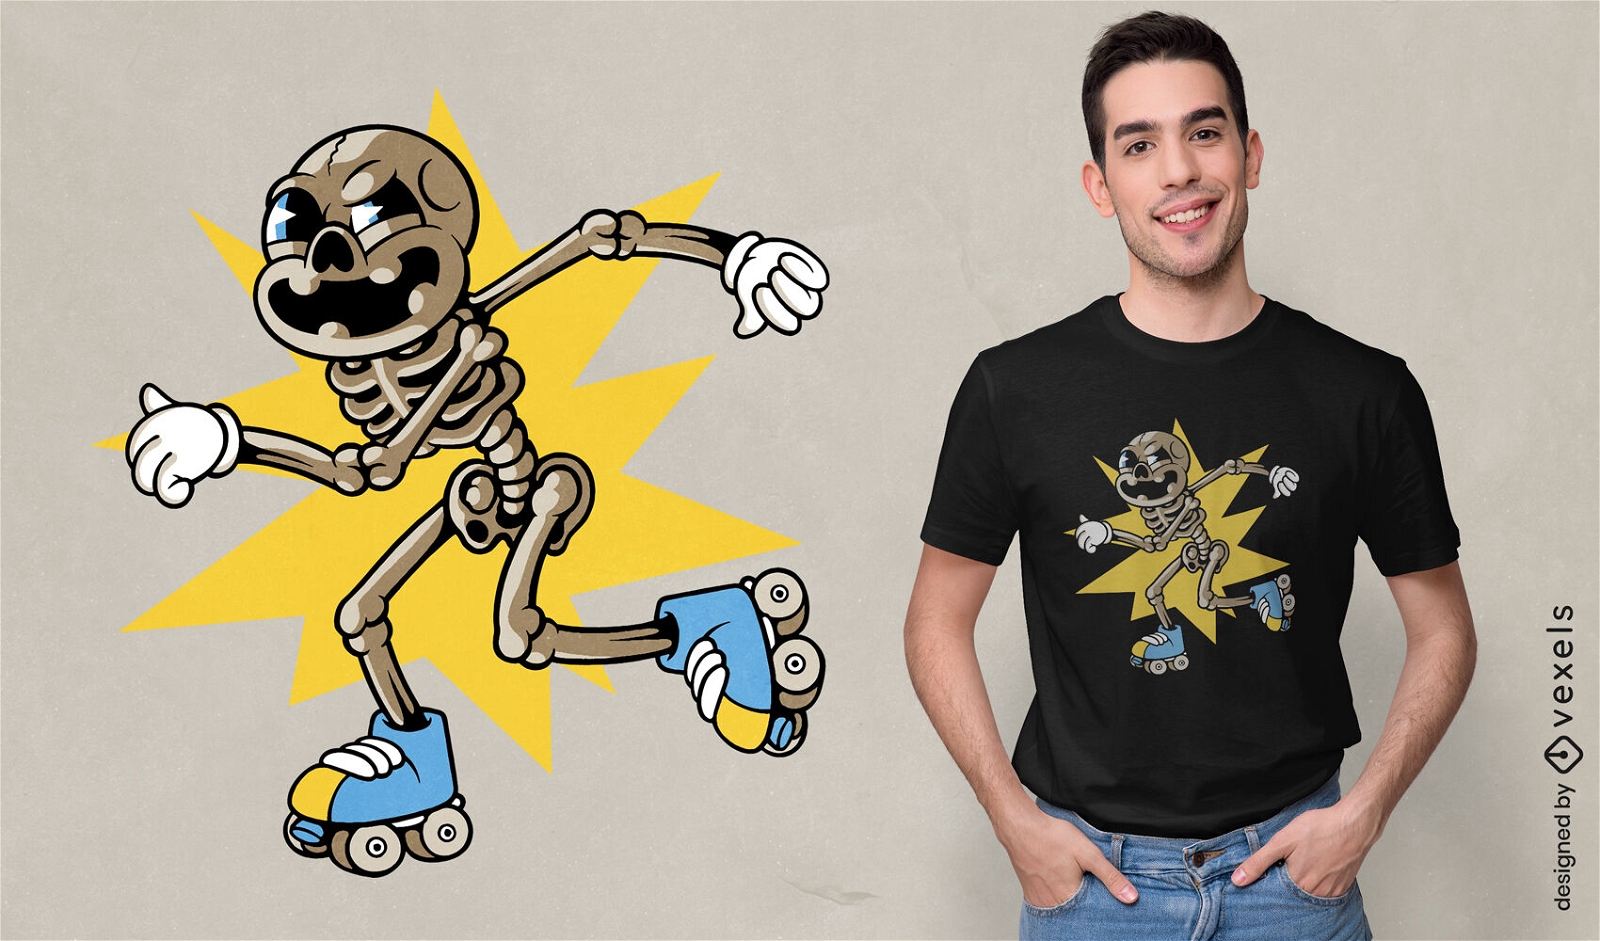 Roller skates skeleton t-shirt design